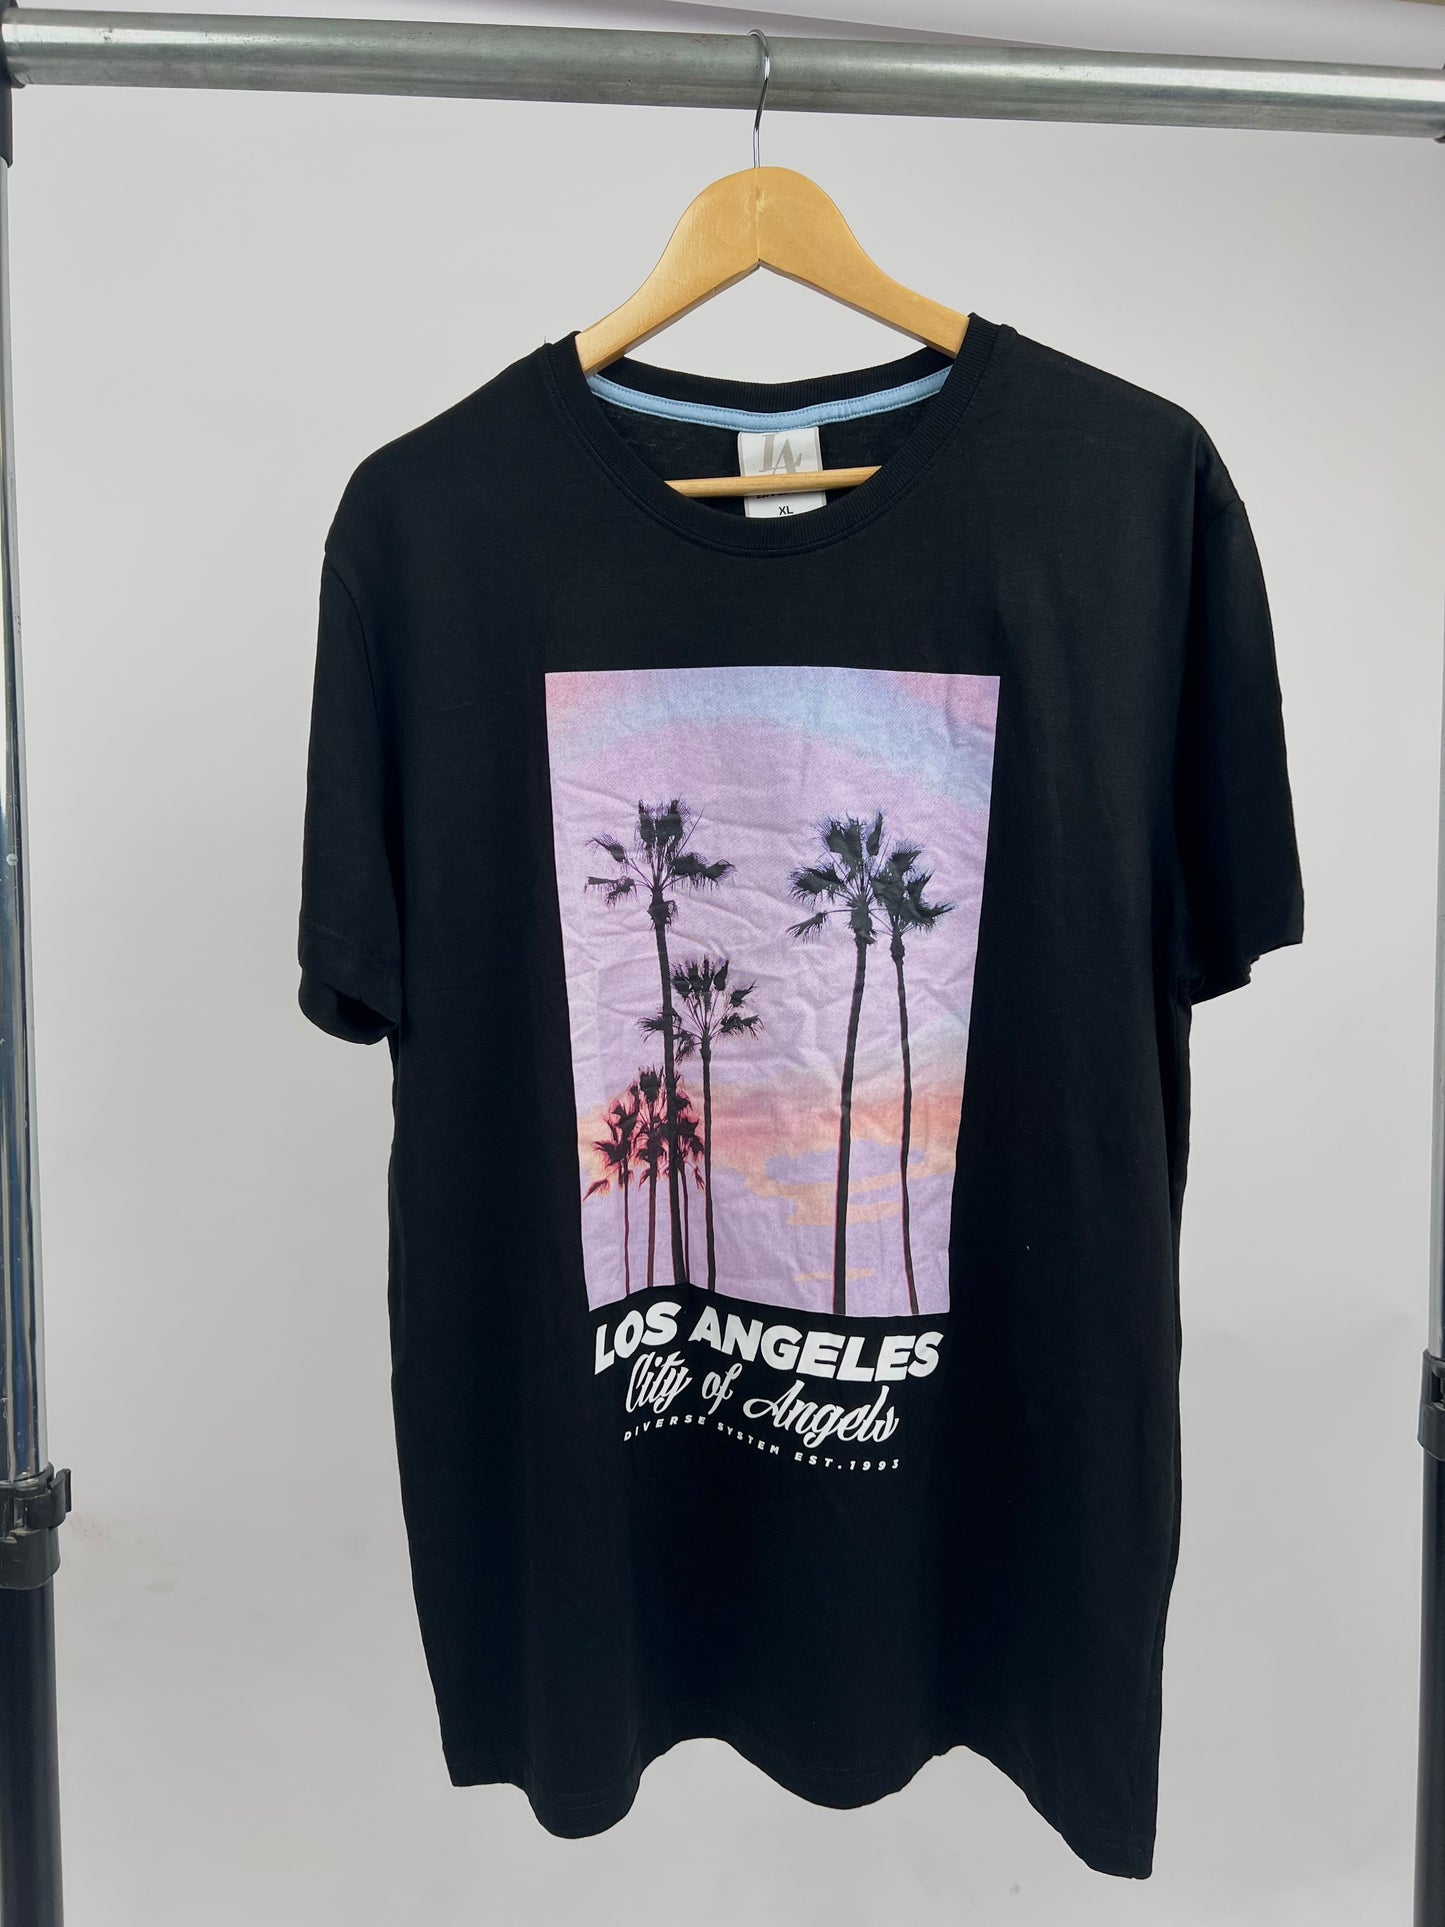 Diverse LA graphic print t-shirt